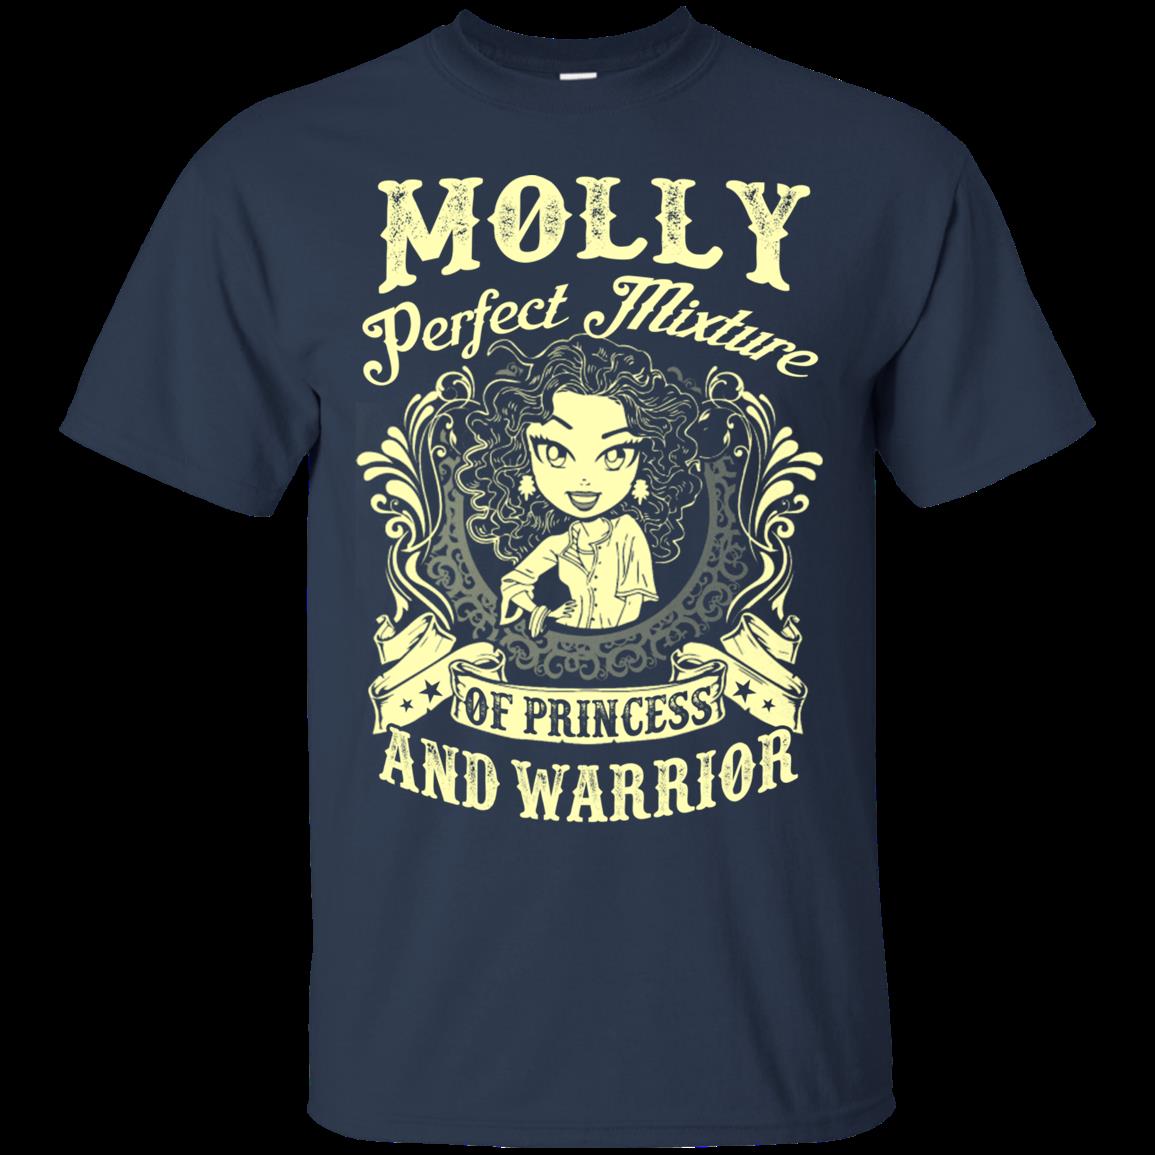 Molly Woman Shirts Perfect Mixture 1